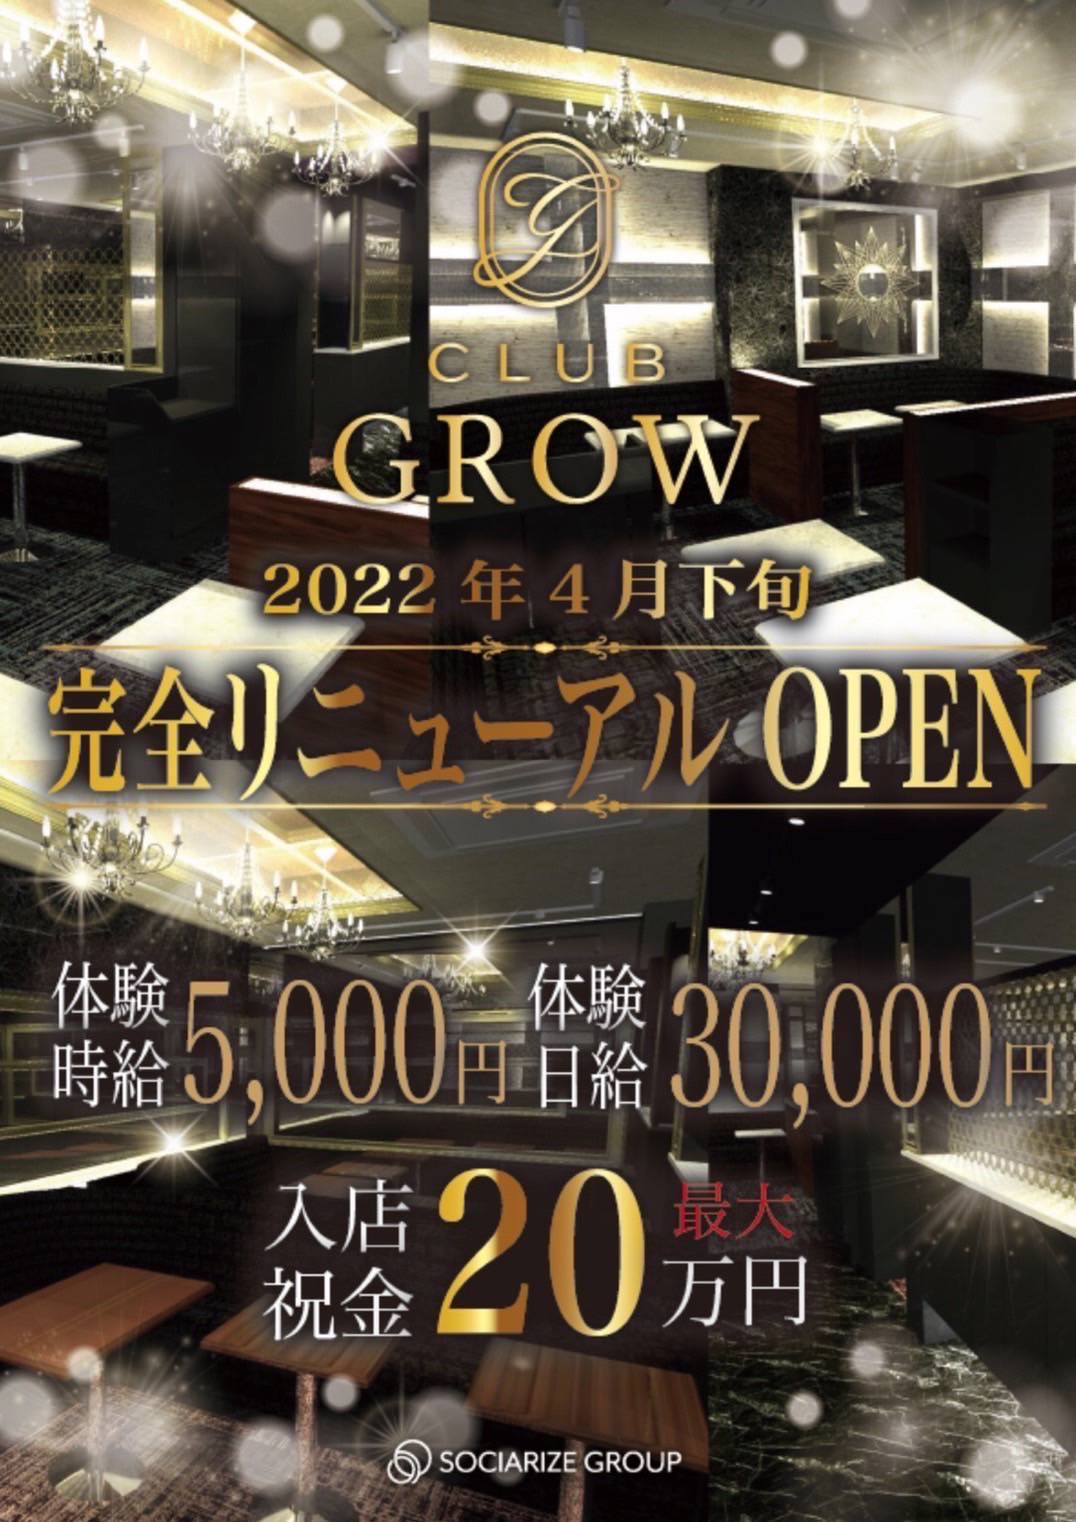 上田 キャバクラ「Club Grow」